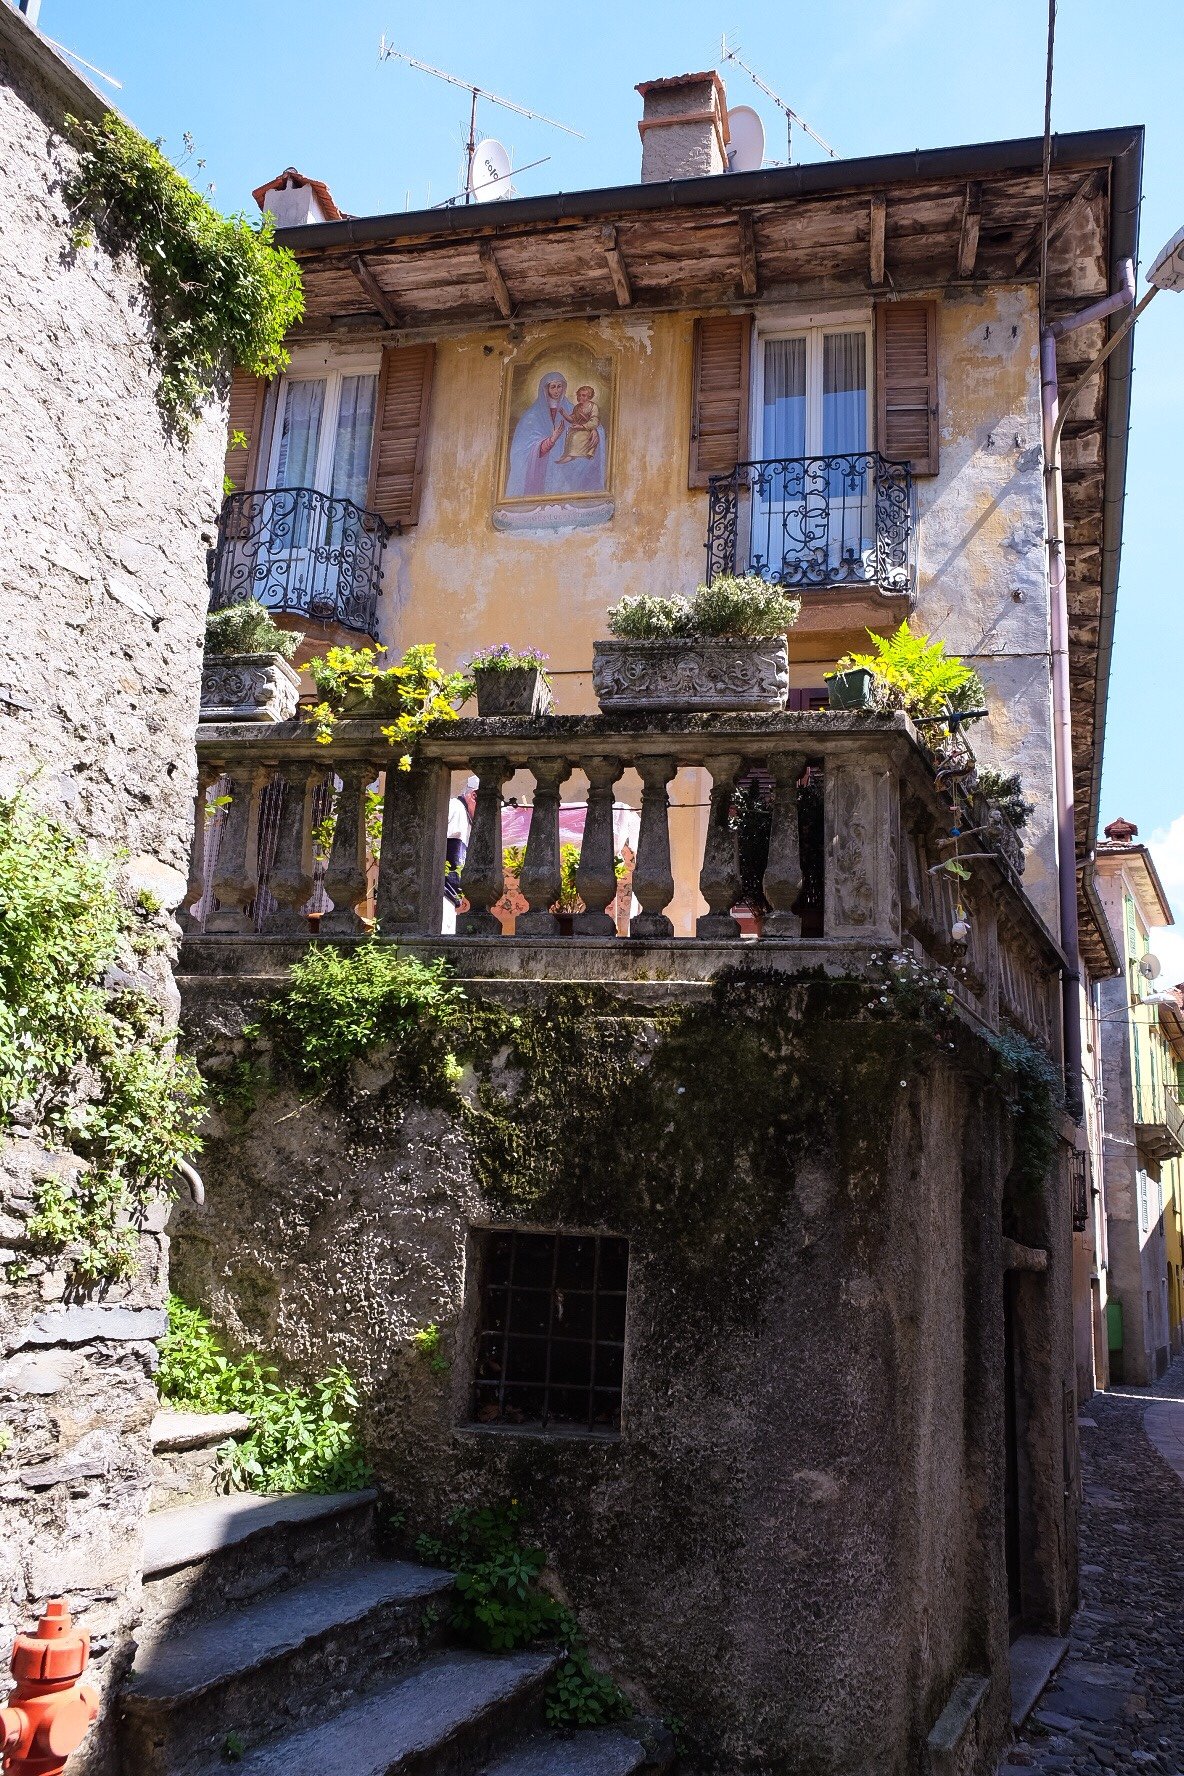 The village of Maccagno on Lake Maggiore